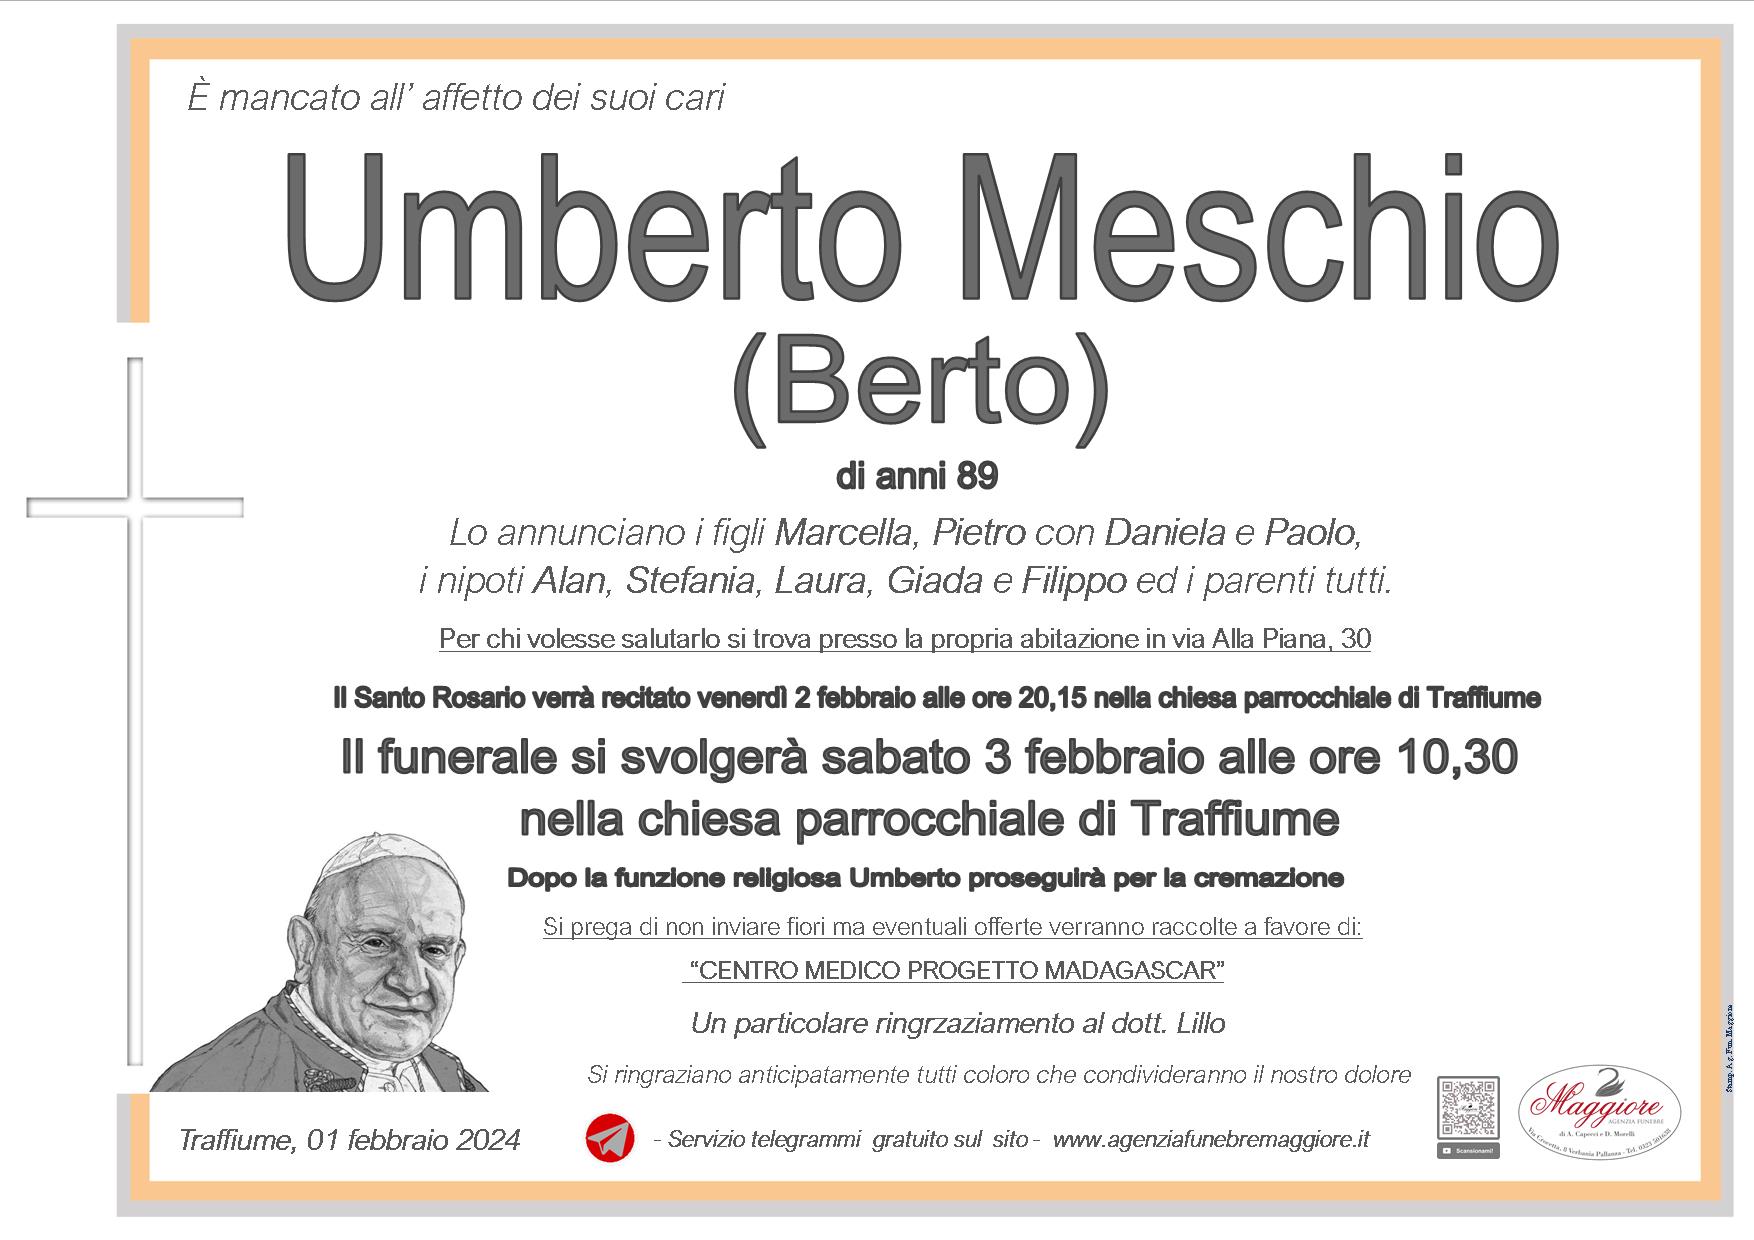 Umberto Meschio